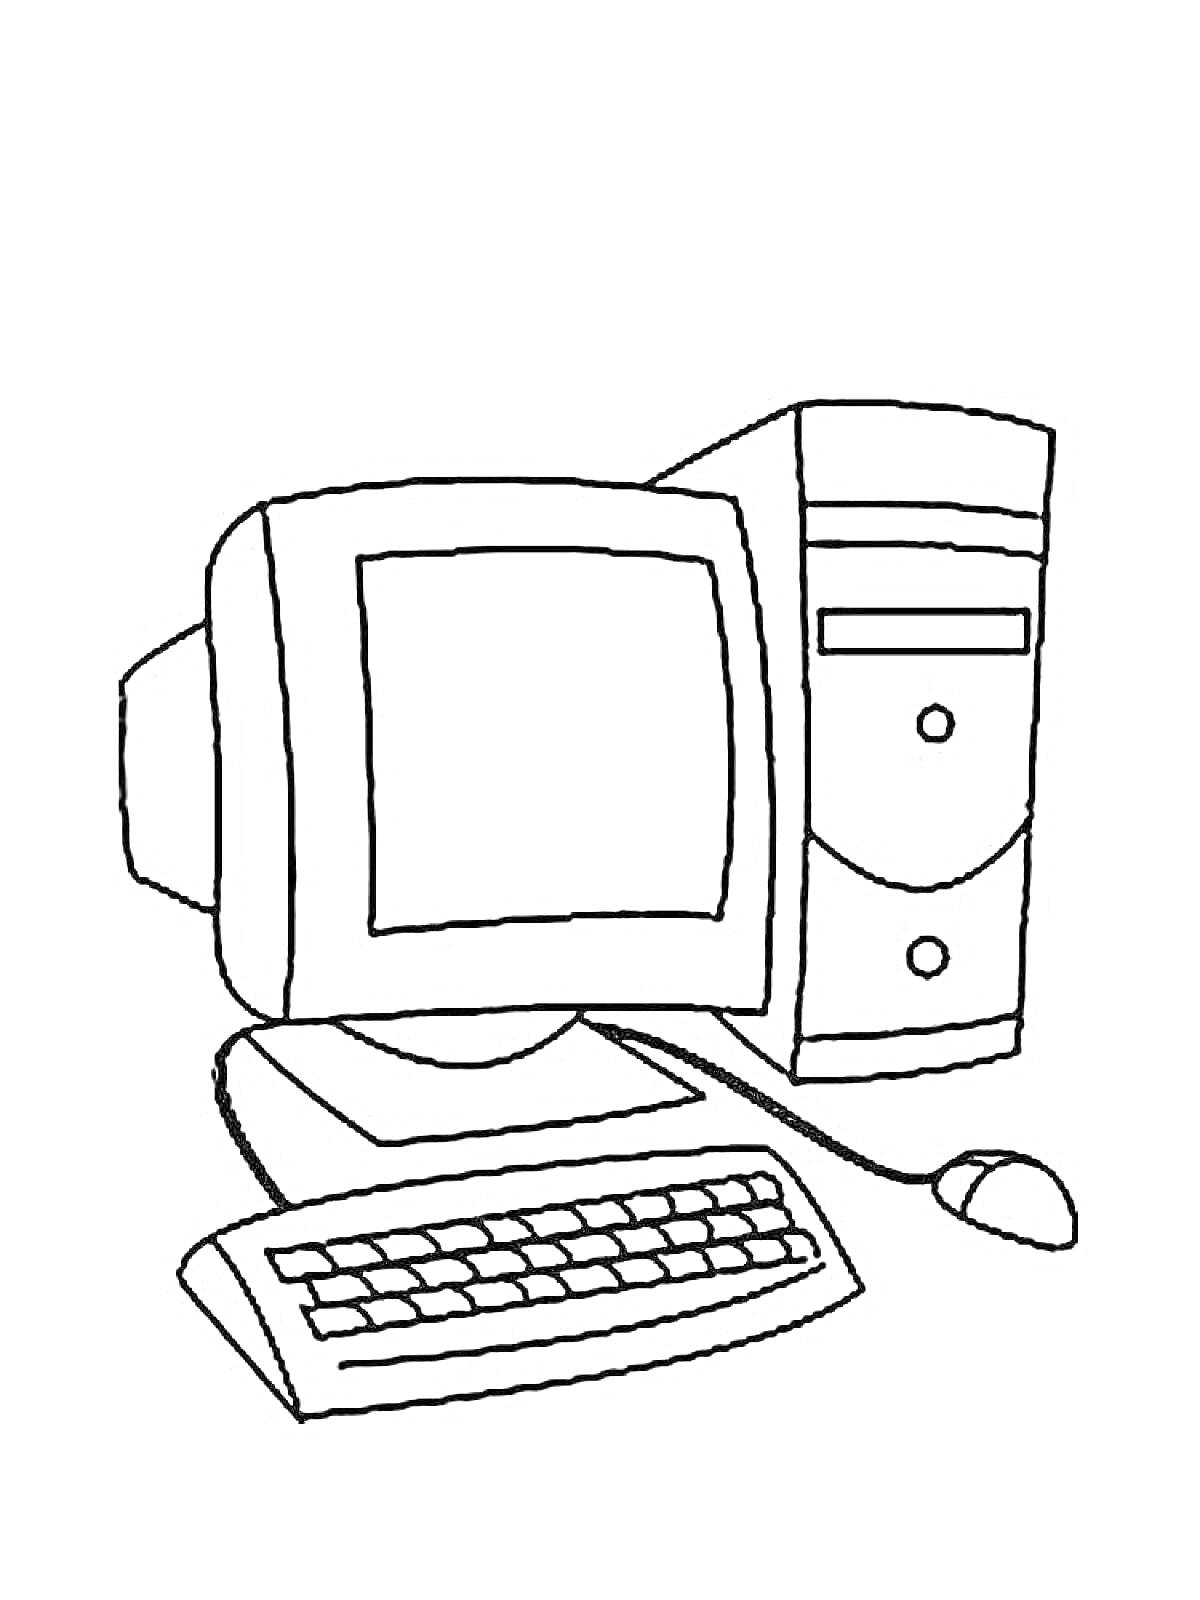 Раскраска Компьютер с монитором, клавиатурой и мышкой